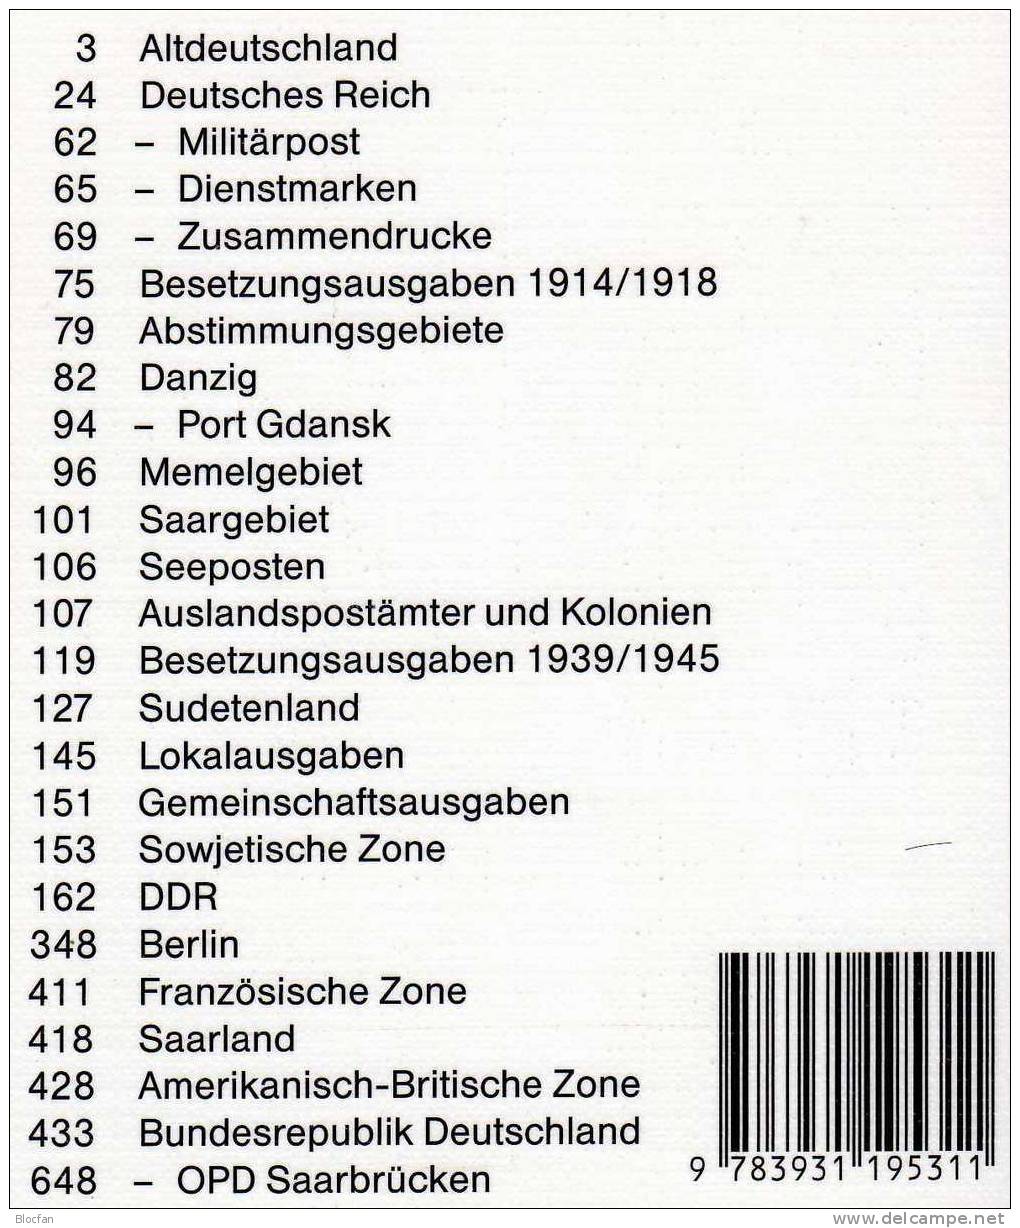 Briefmarken Katalog 2003 Antiquarisch 12€ Philex Altdeutschland Deutsches Reich Saar Danzig Memel SBZ DDR Berlin BRD - Duitsland